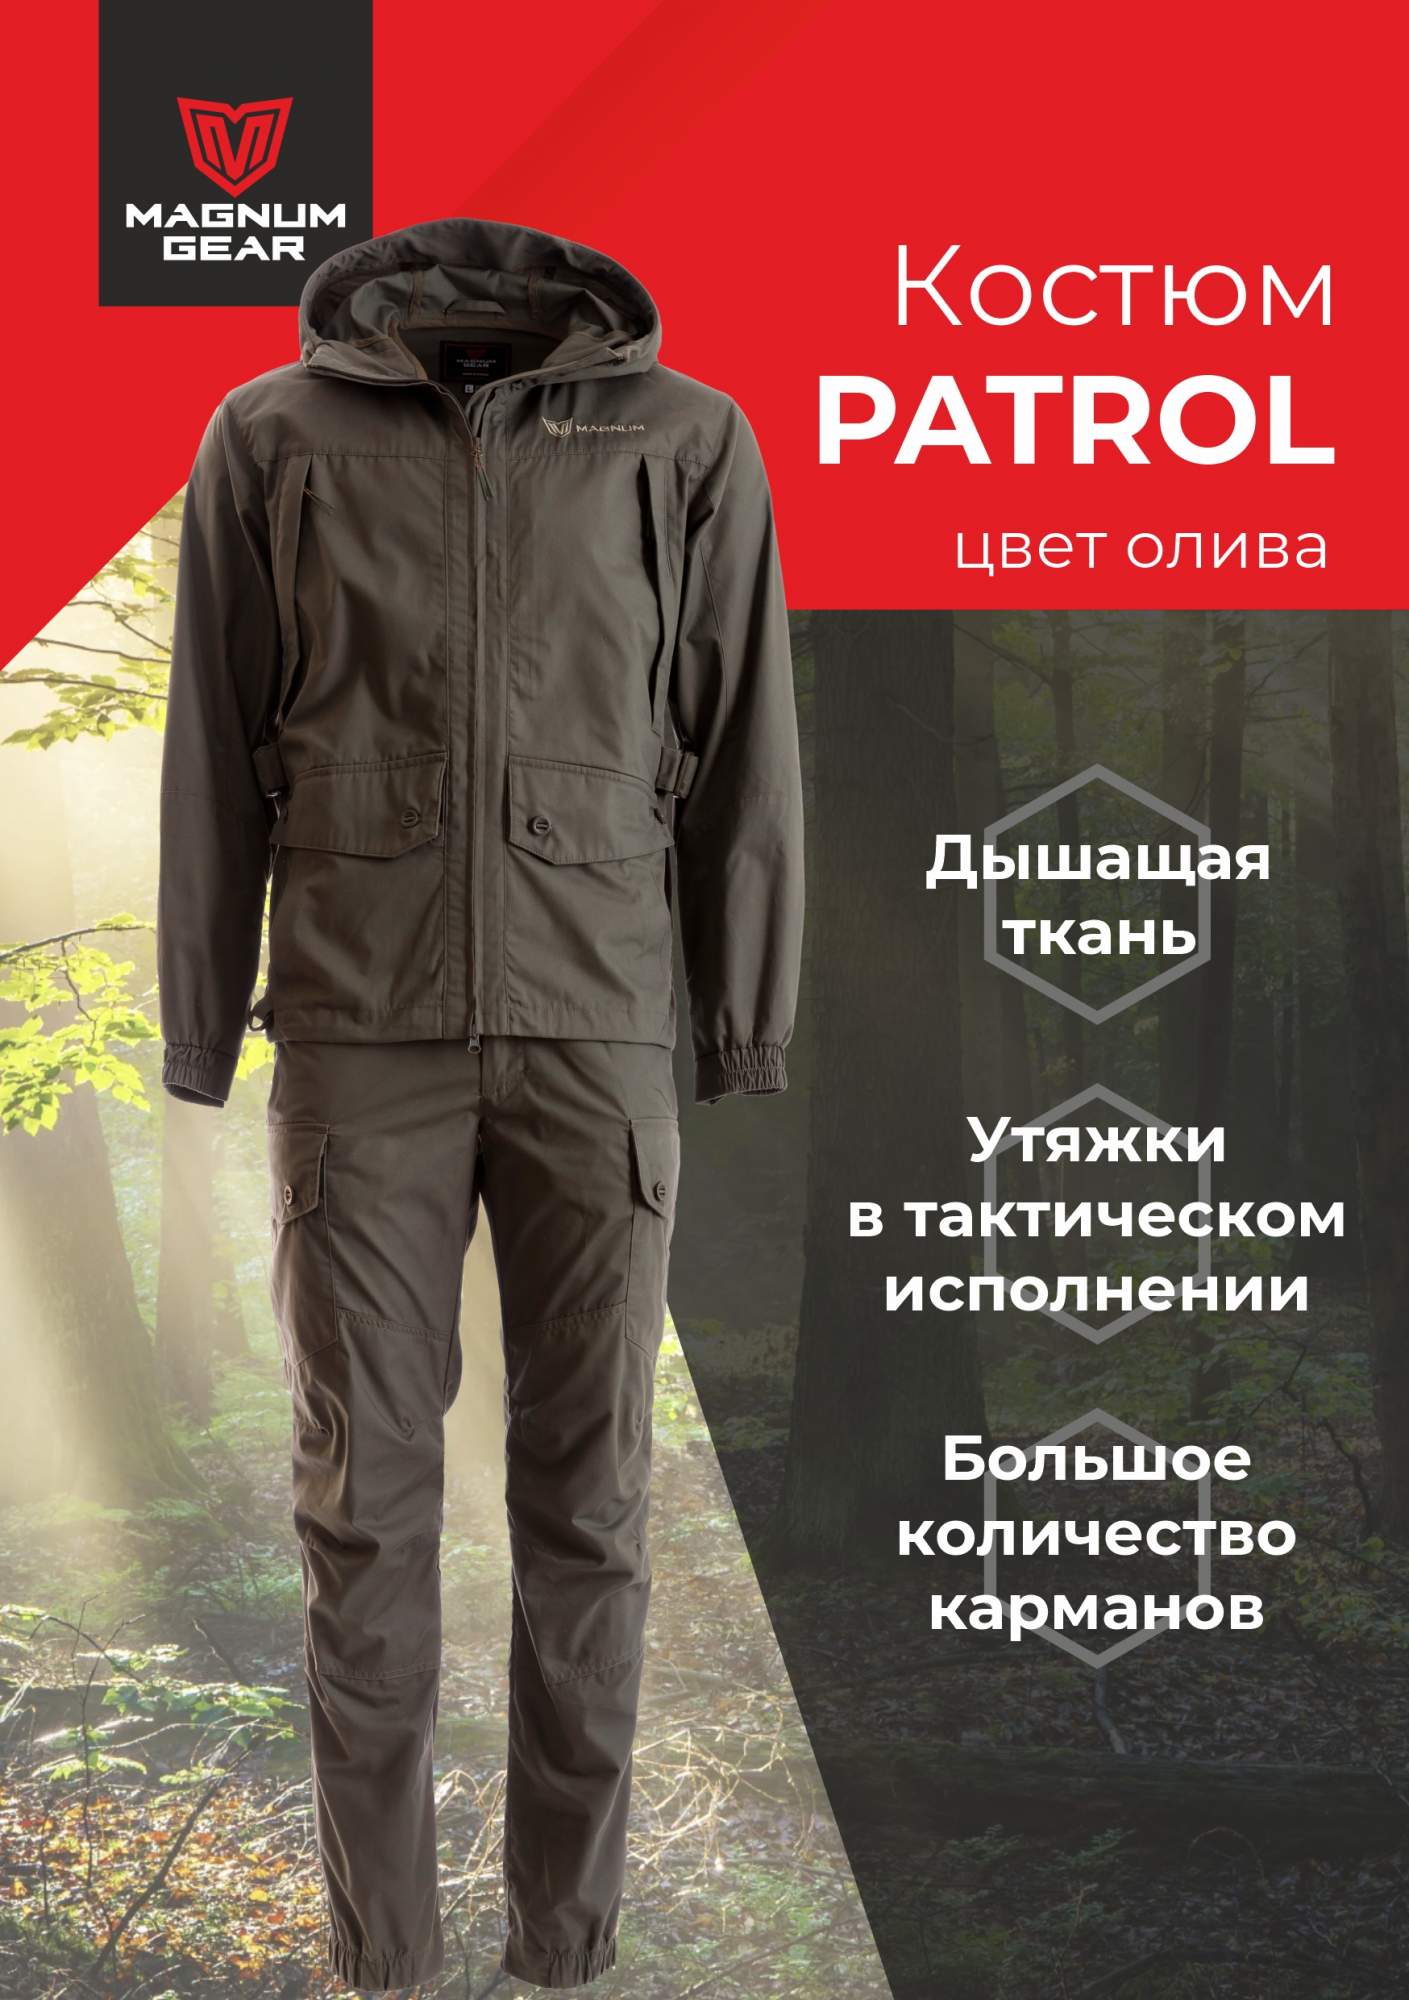 Костюм мужской Magnum PATROL серый 48-50/170-176 - купить в Москве, цены на Мегамаркет | 600017582388